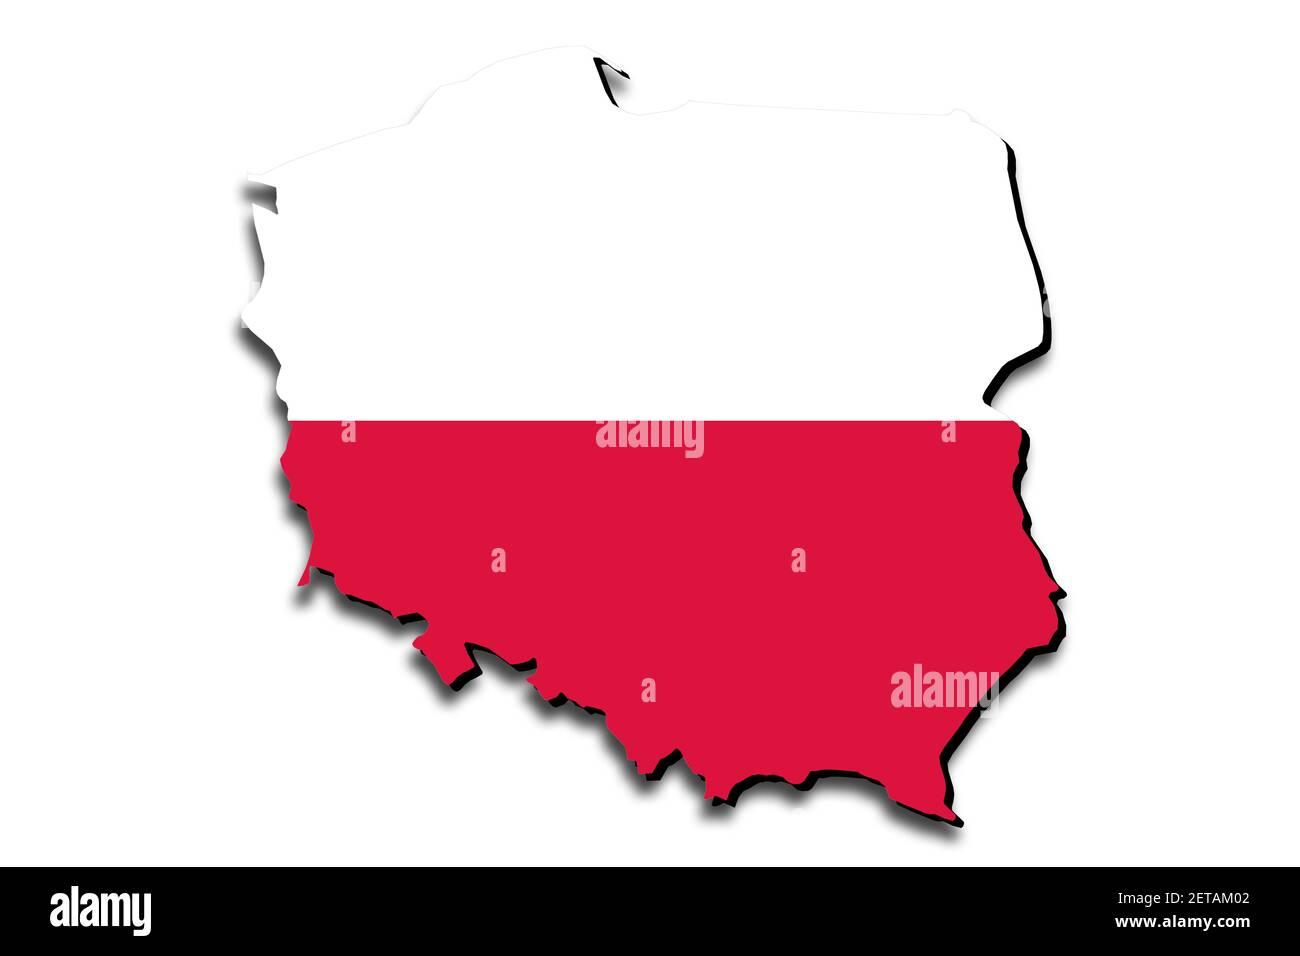 Mapa de Polonia con la bandera nacional superpuesta sobre el país. 3D gráficos que proyectan una sombra sobre el fondo blanco Foto de stock